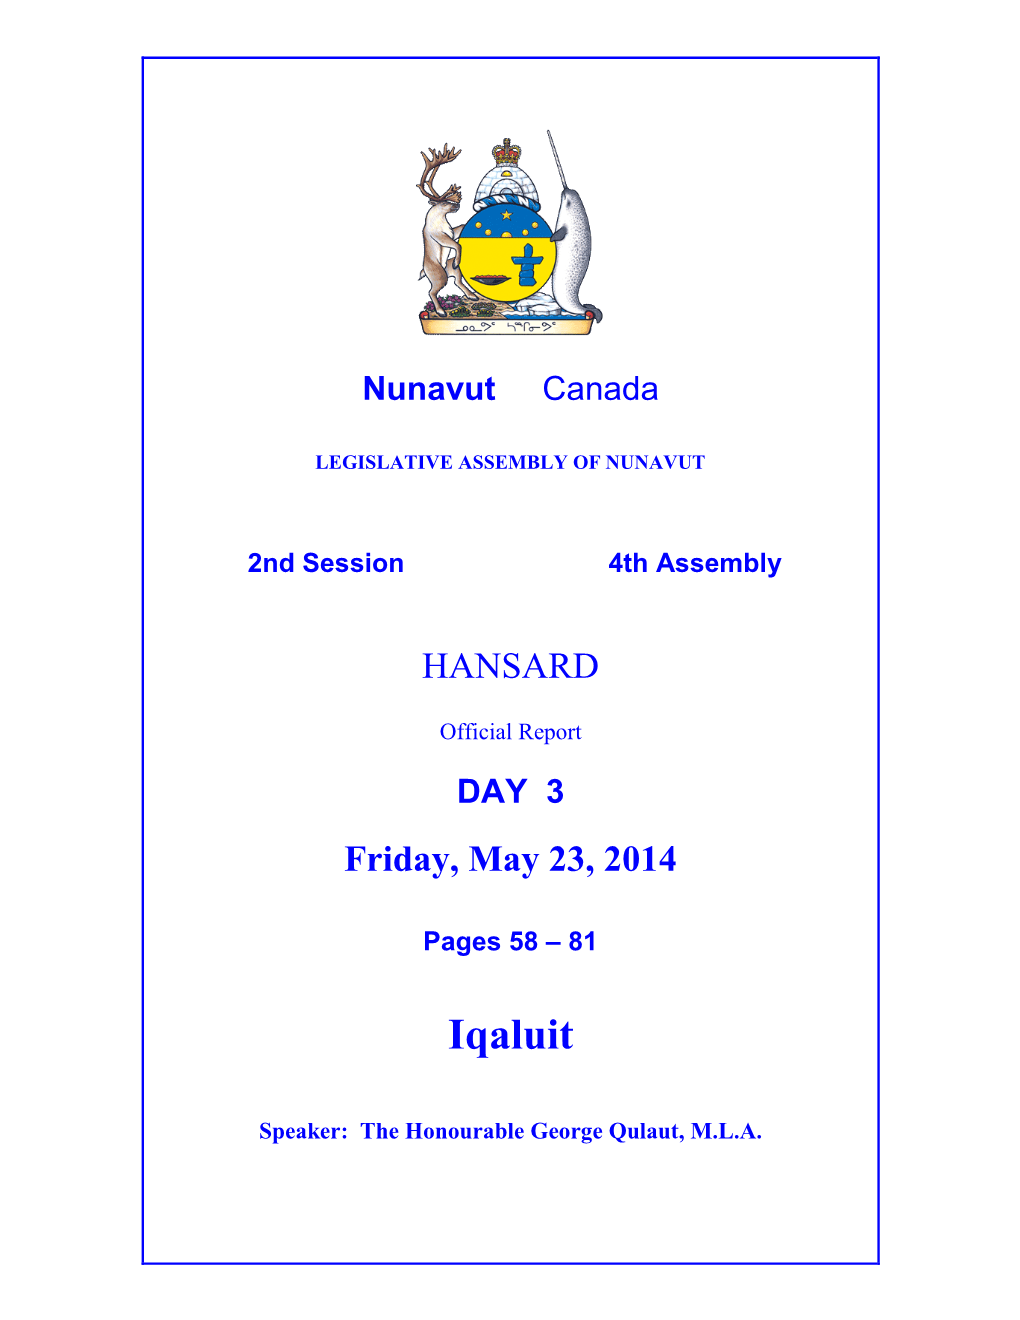 Nunavut Hansard 58